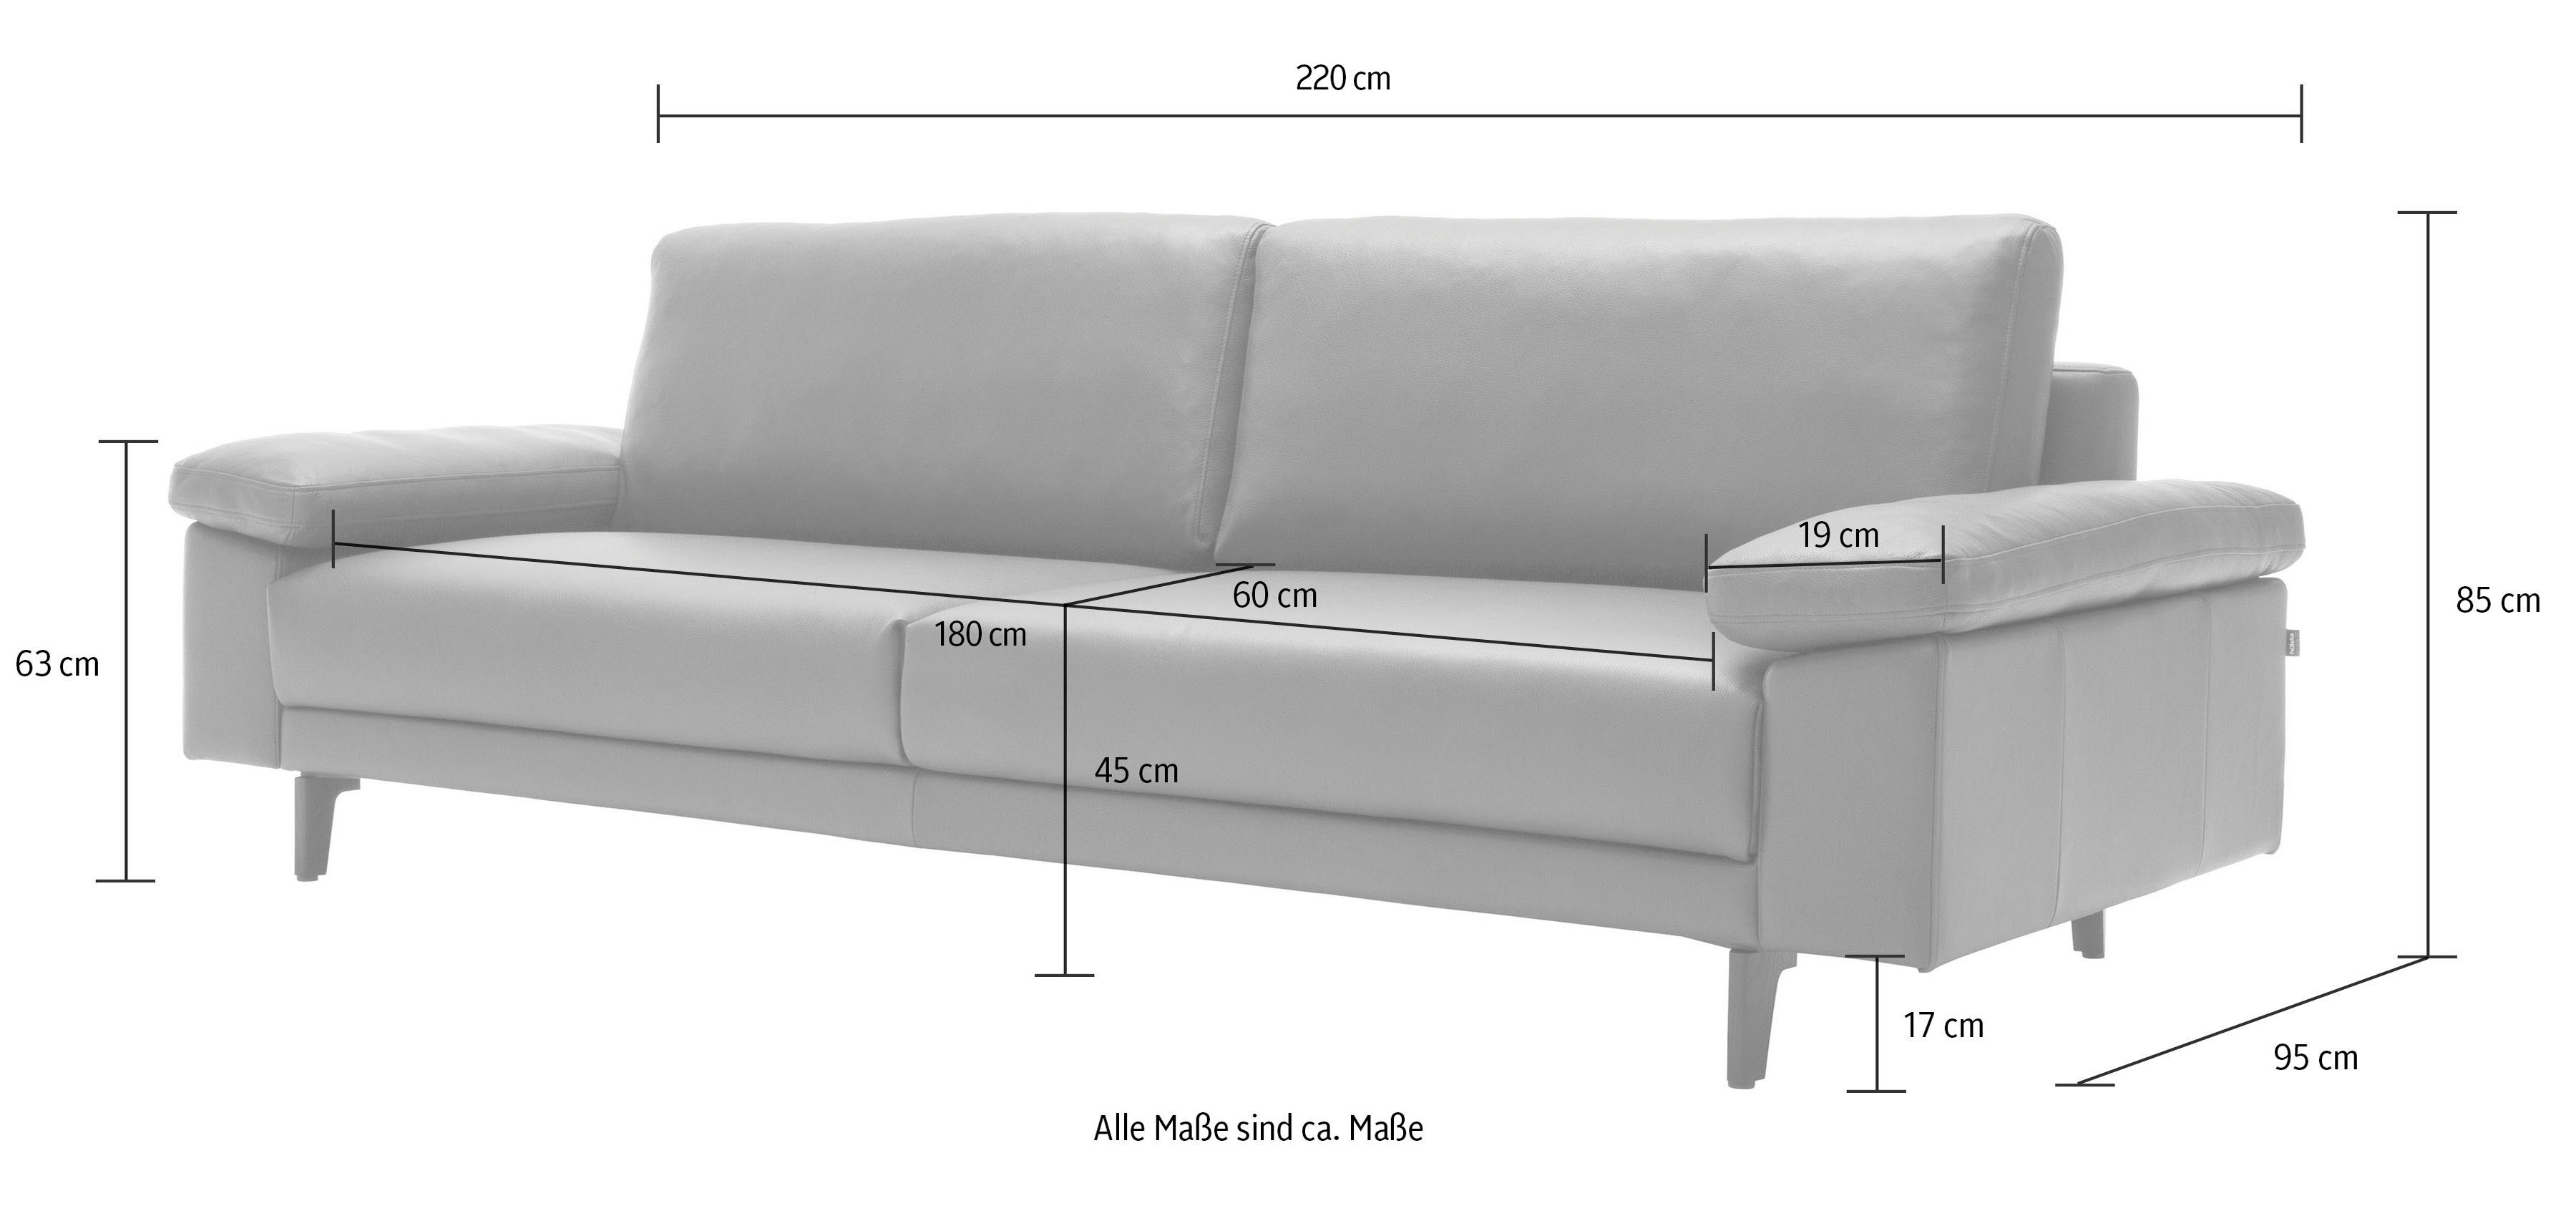 3-Sitzer hülsta sofa hs.450